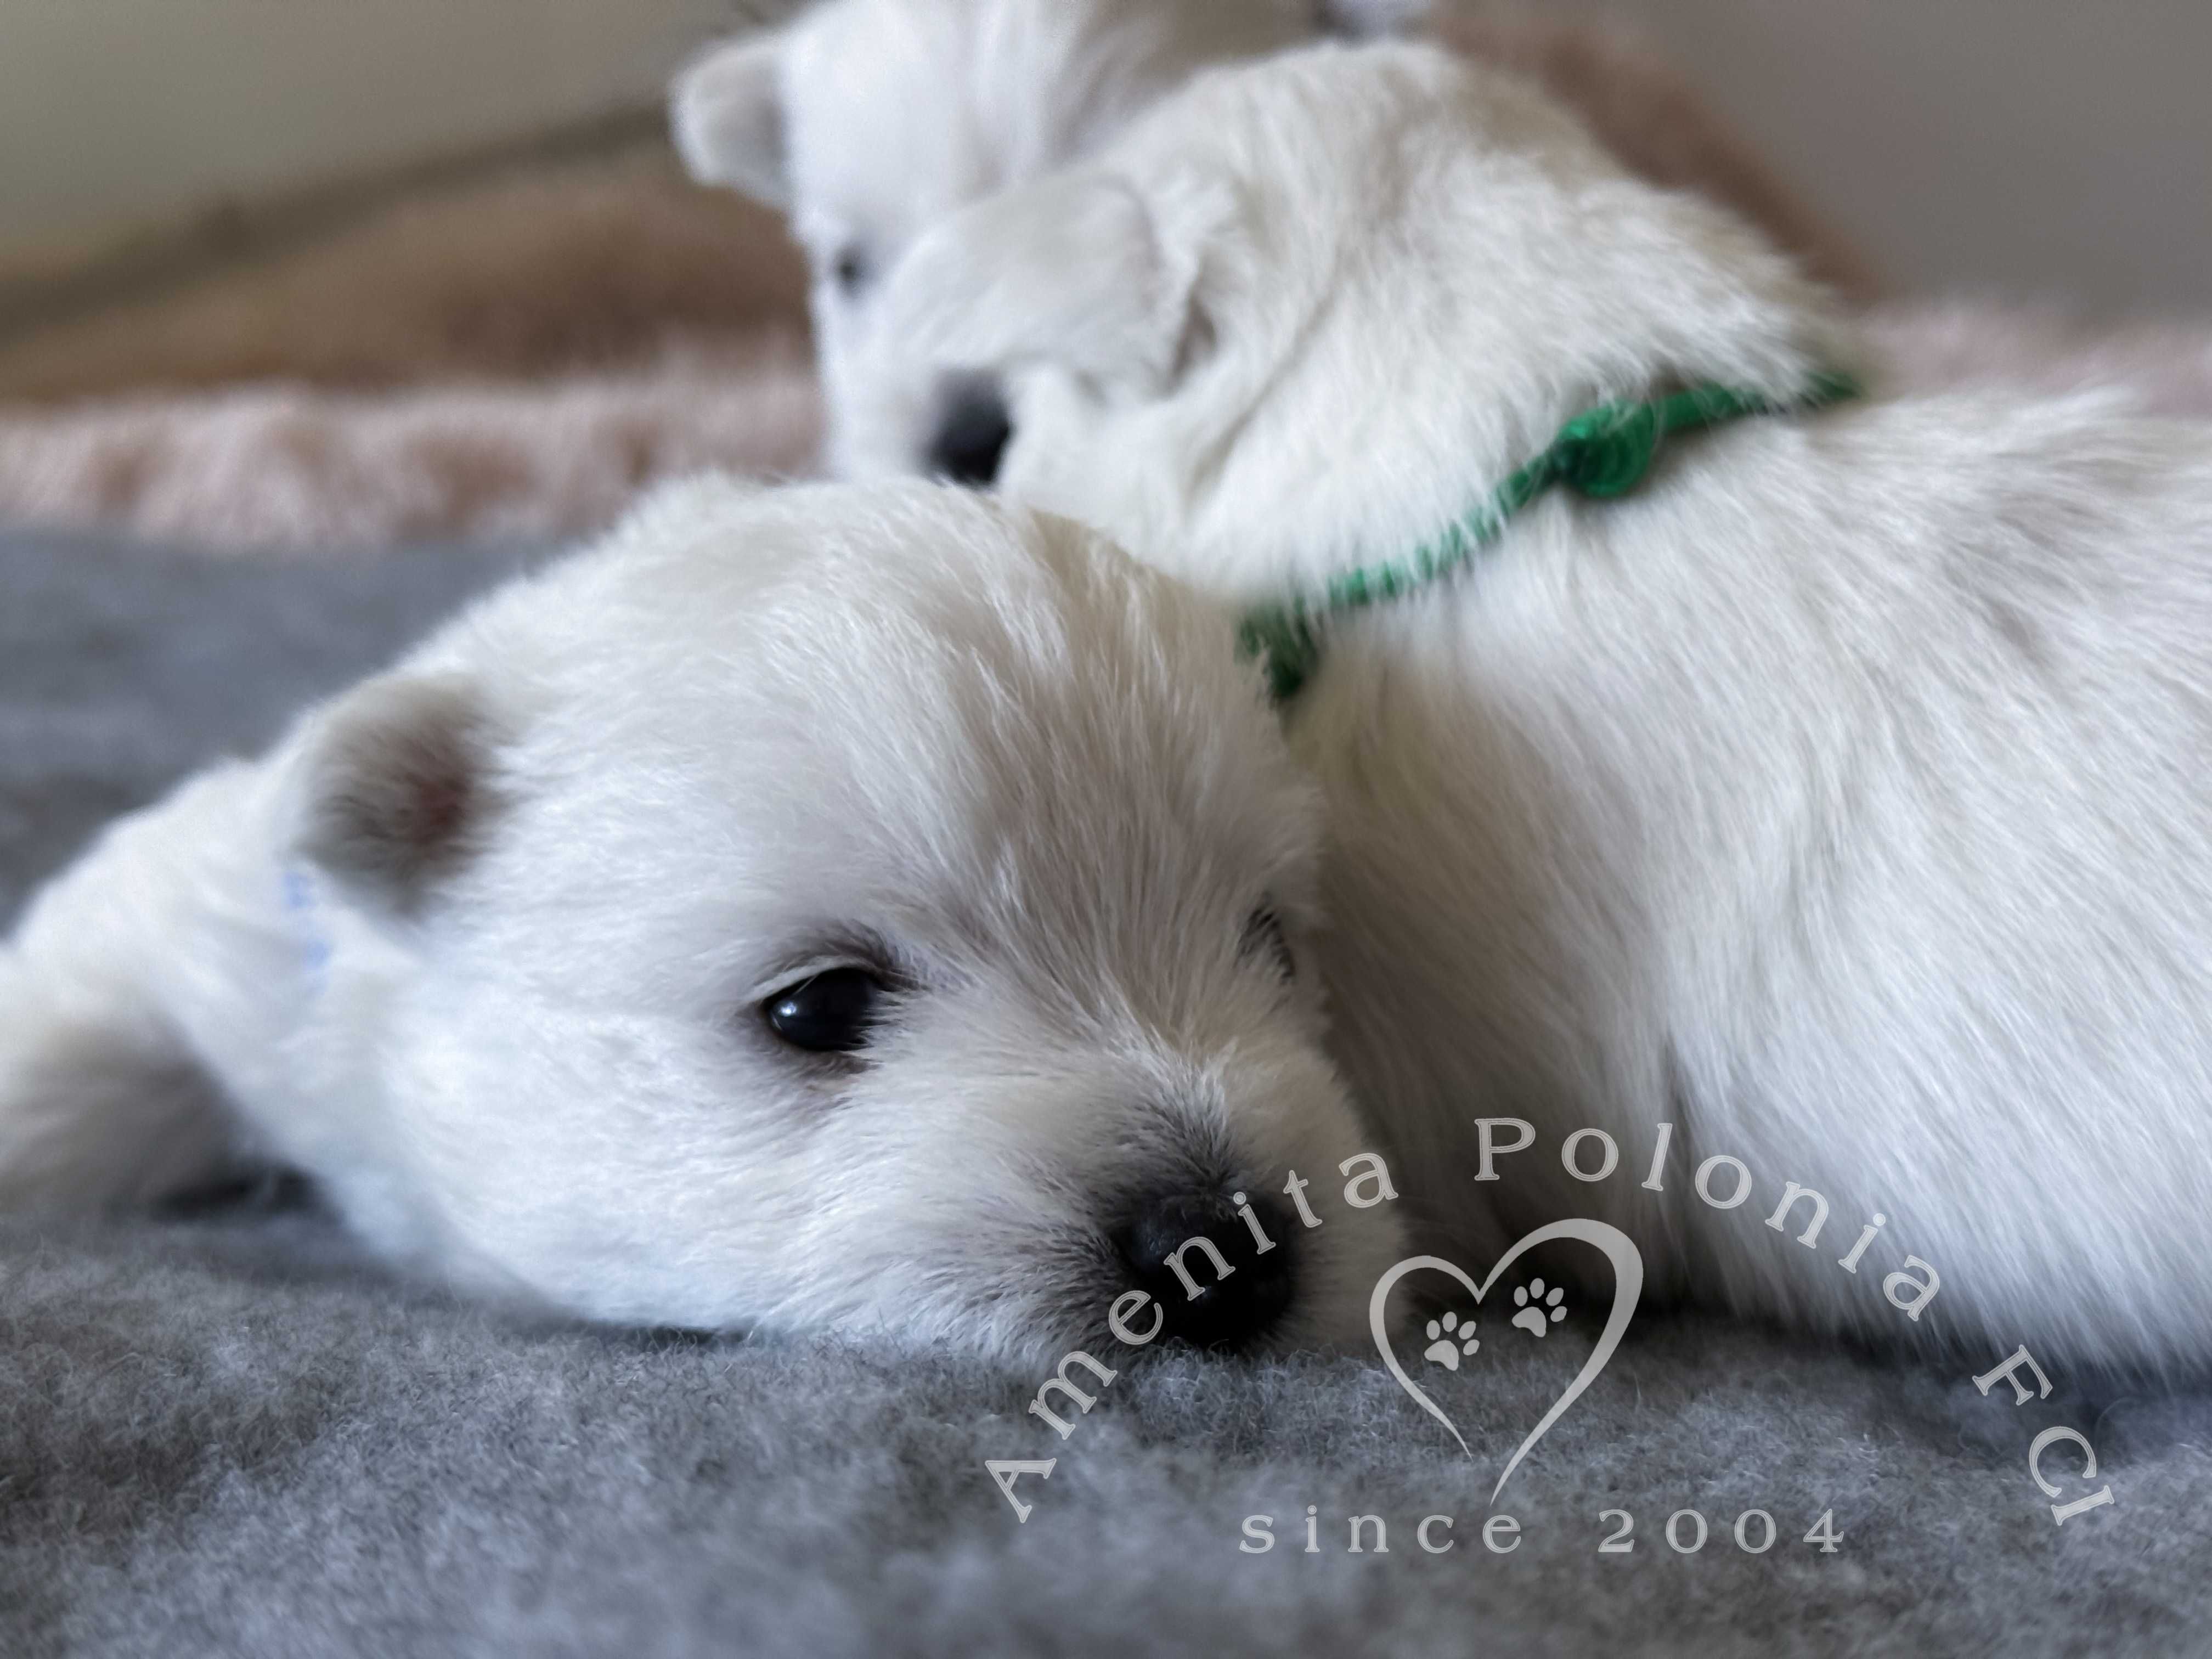 West highland white terrier - suczka FCI